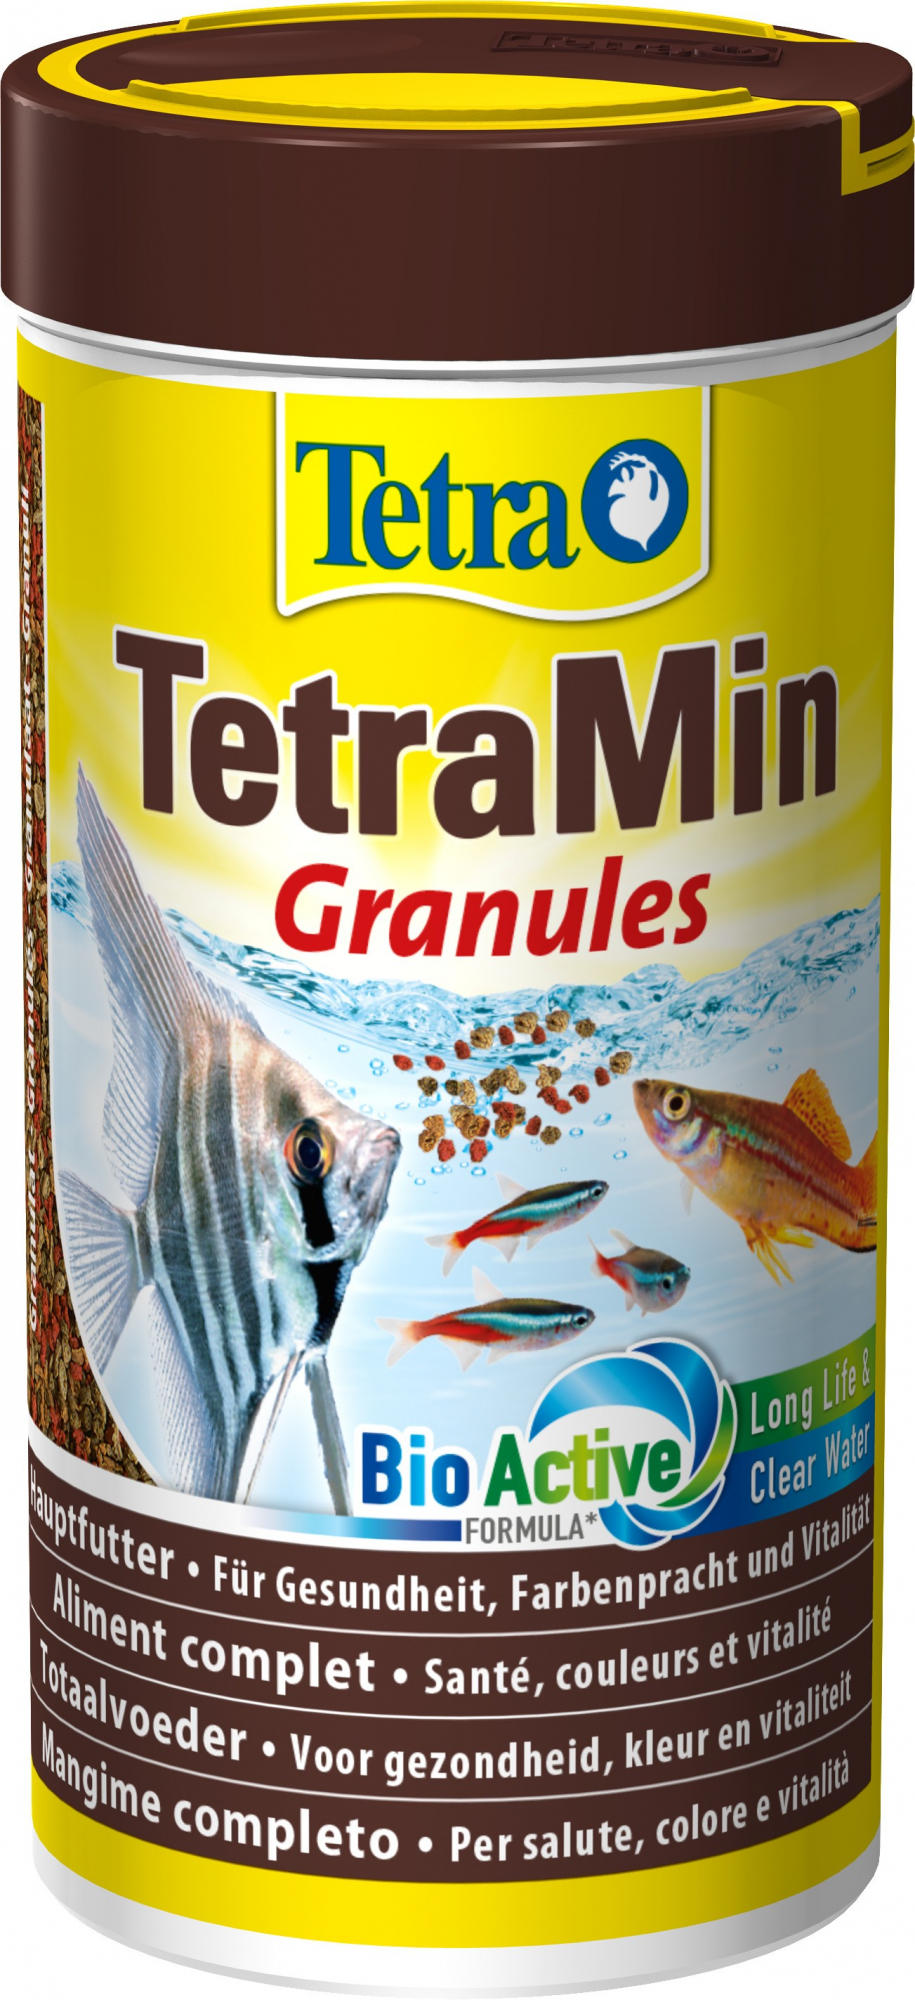 TetraMin Grânulos - Alimentos para peixes tropicais